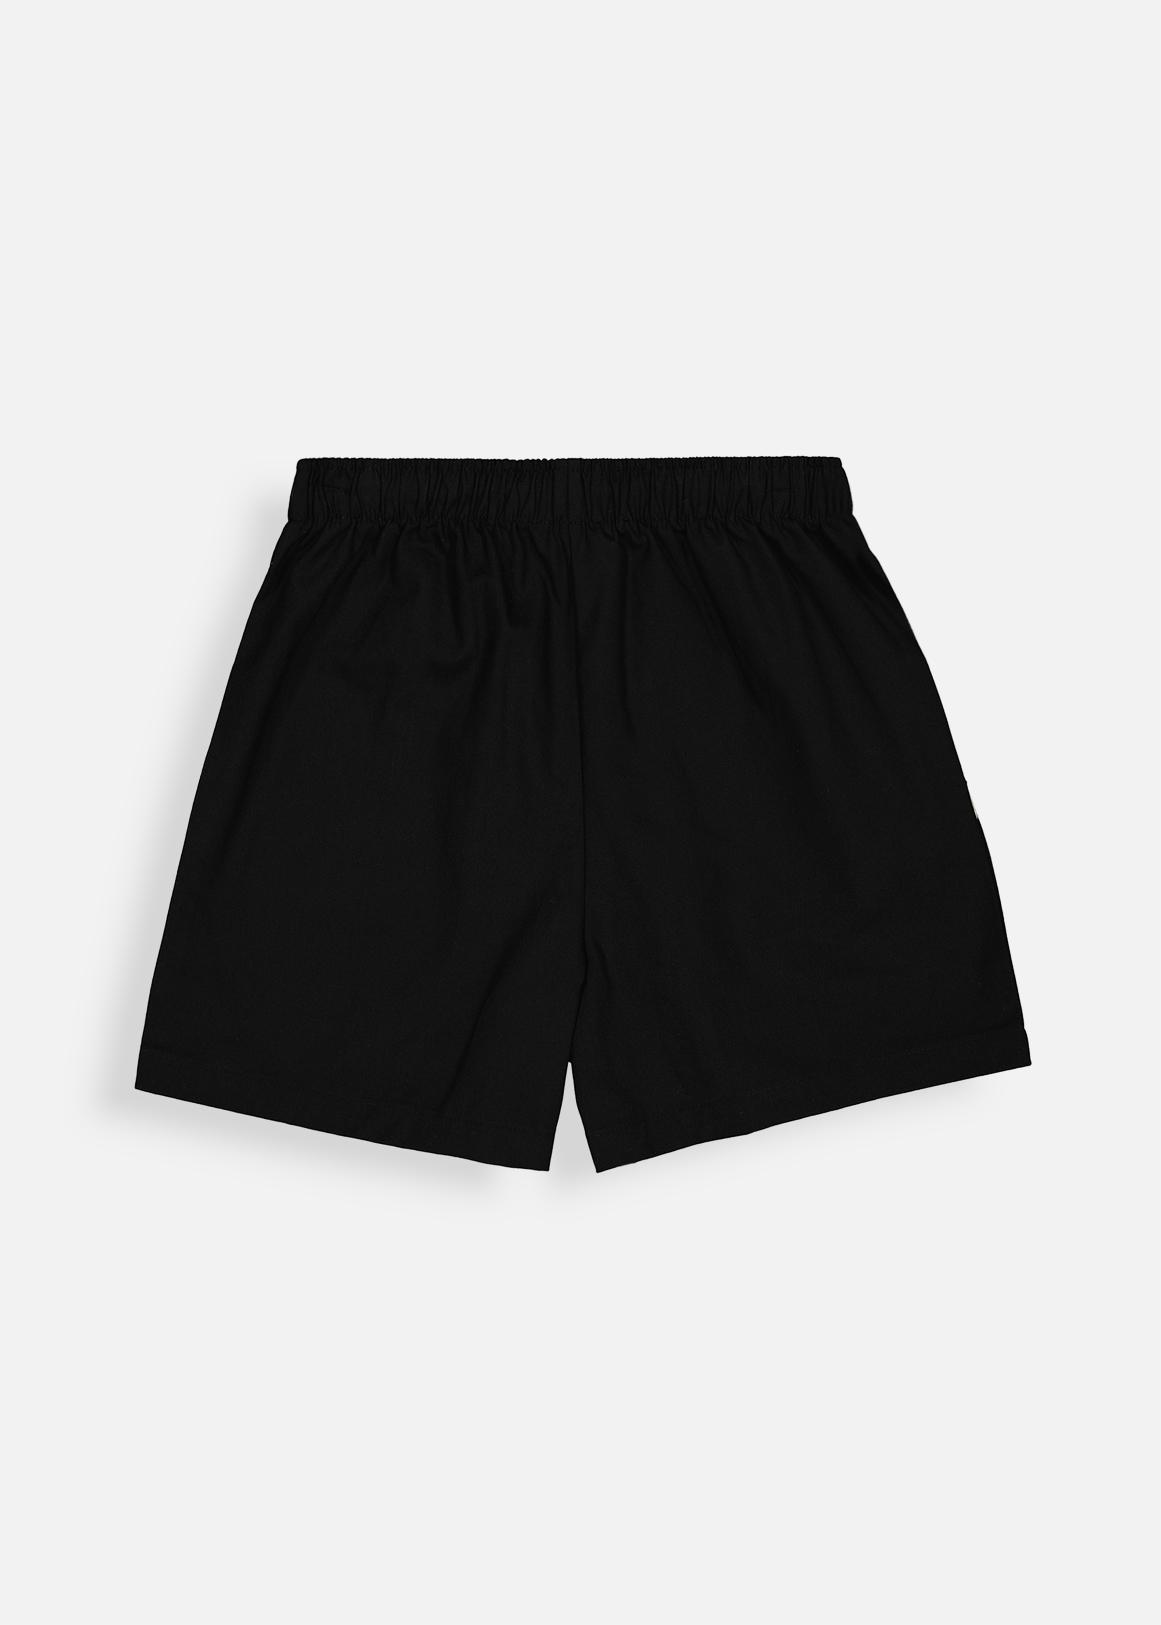 https://assets.woolworthsstatic.co.za/Boys-Cotton-Sports-Shorts-X-BLACK-504546342-back.jpg?V=dOGI&o=eyJidWNrZXQiOiJ3dy1vbmxpbmUtaW1hZ2UtcmVzaXplIiwia2V5IjoiaW1hZ2VzL2VsYXN0aWNlcmEvcHJvZHVjdHMvYWx0ZXJuYXRlLzIwMjItMTItMTUvNTA0NTQ2MzQyX1hCTEFDS19iYWNrLmpwZyJ9&q=75